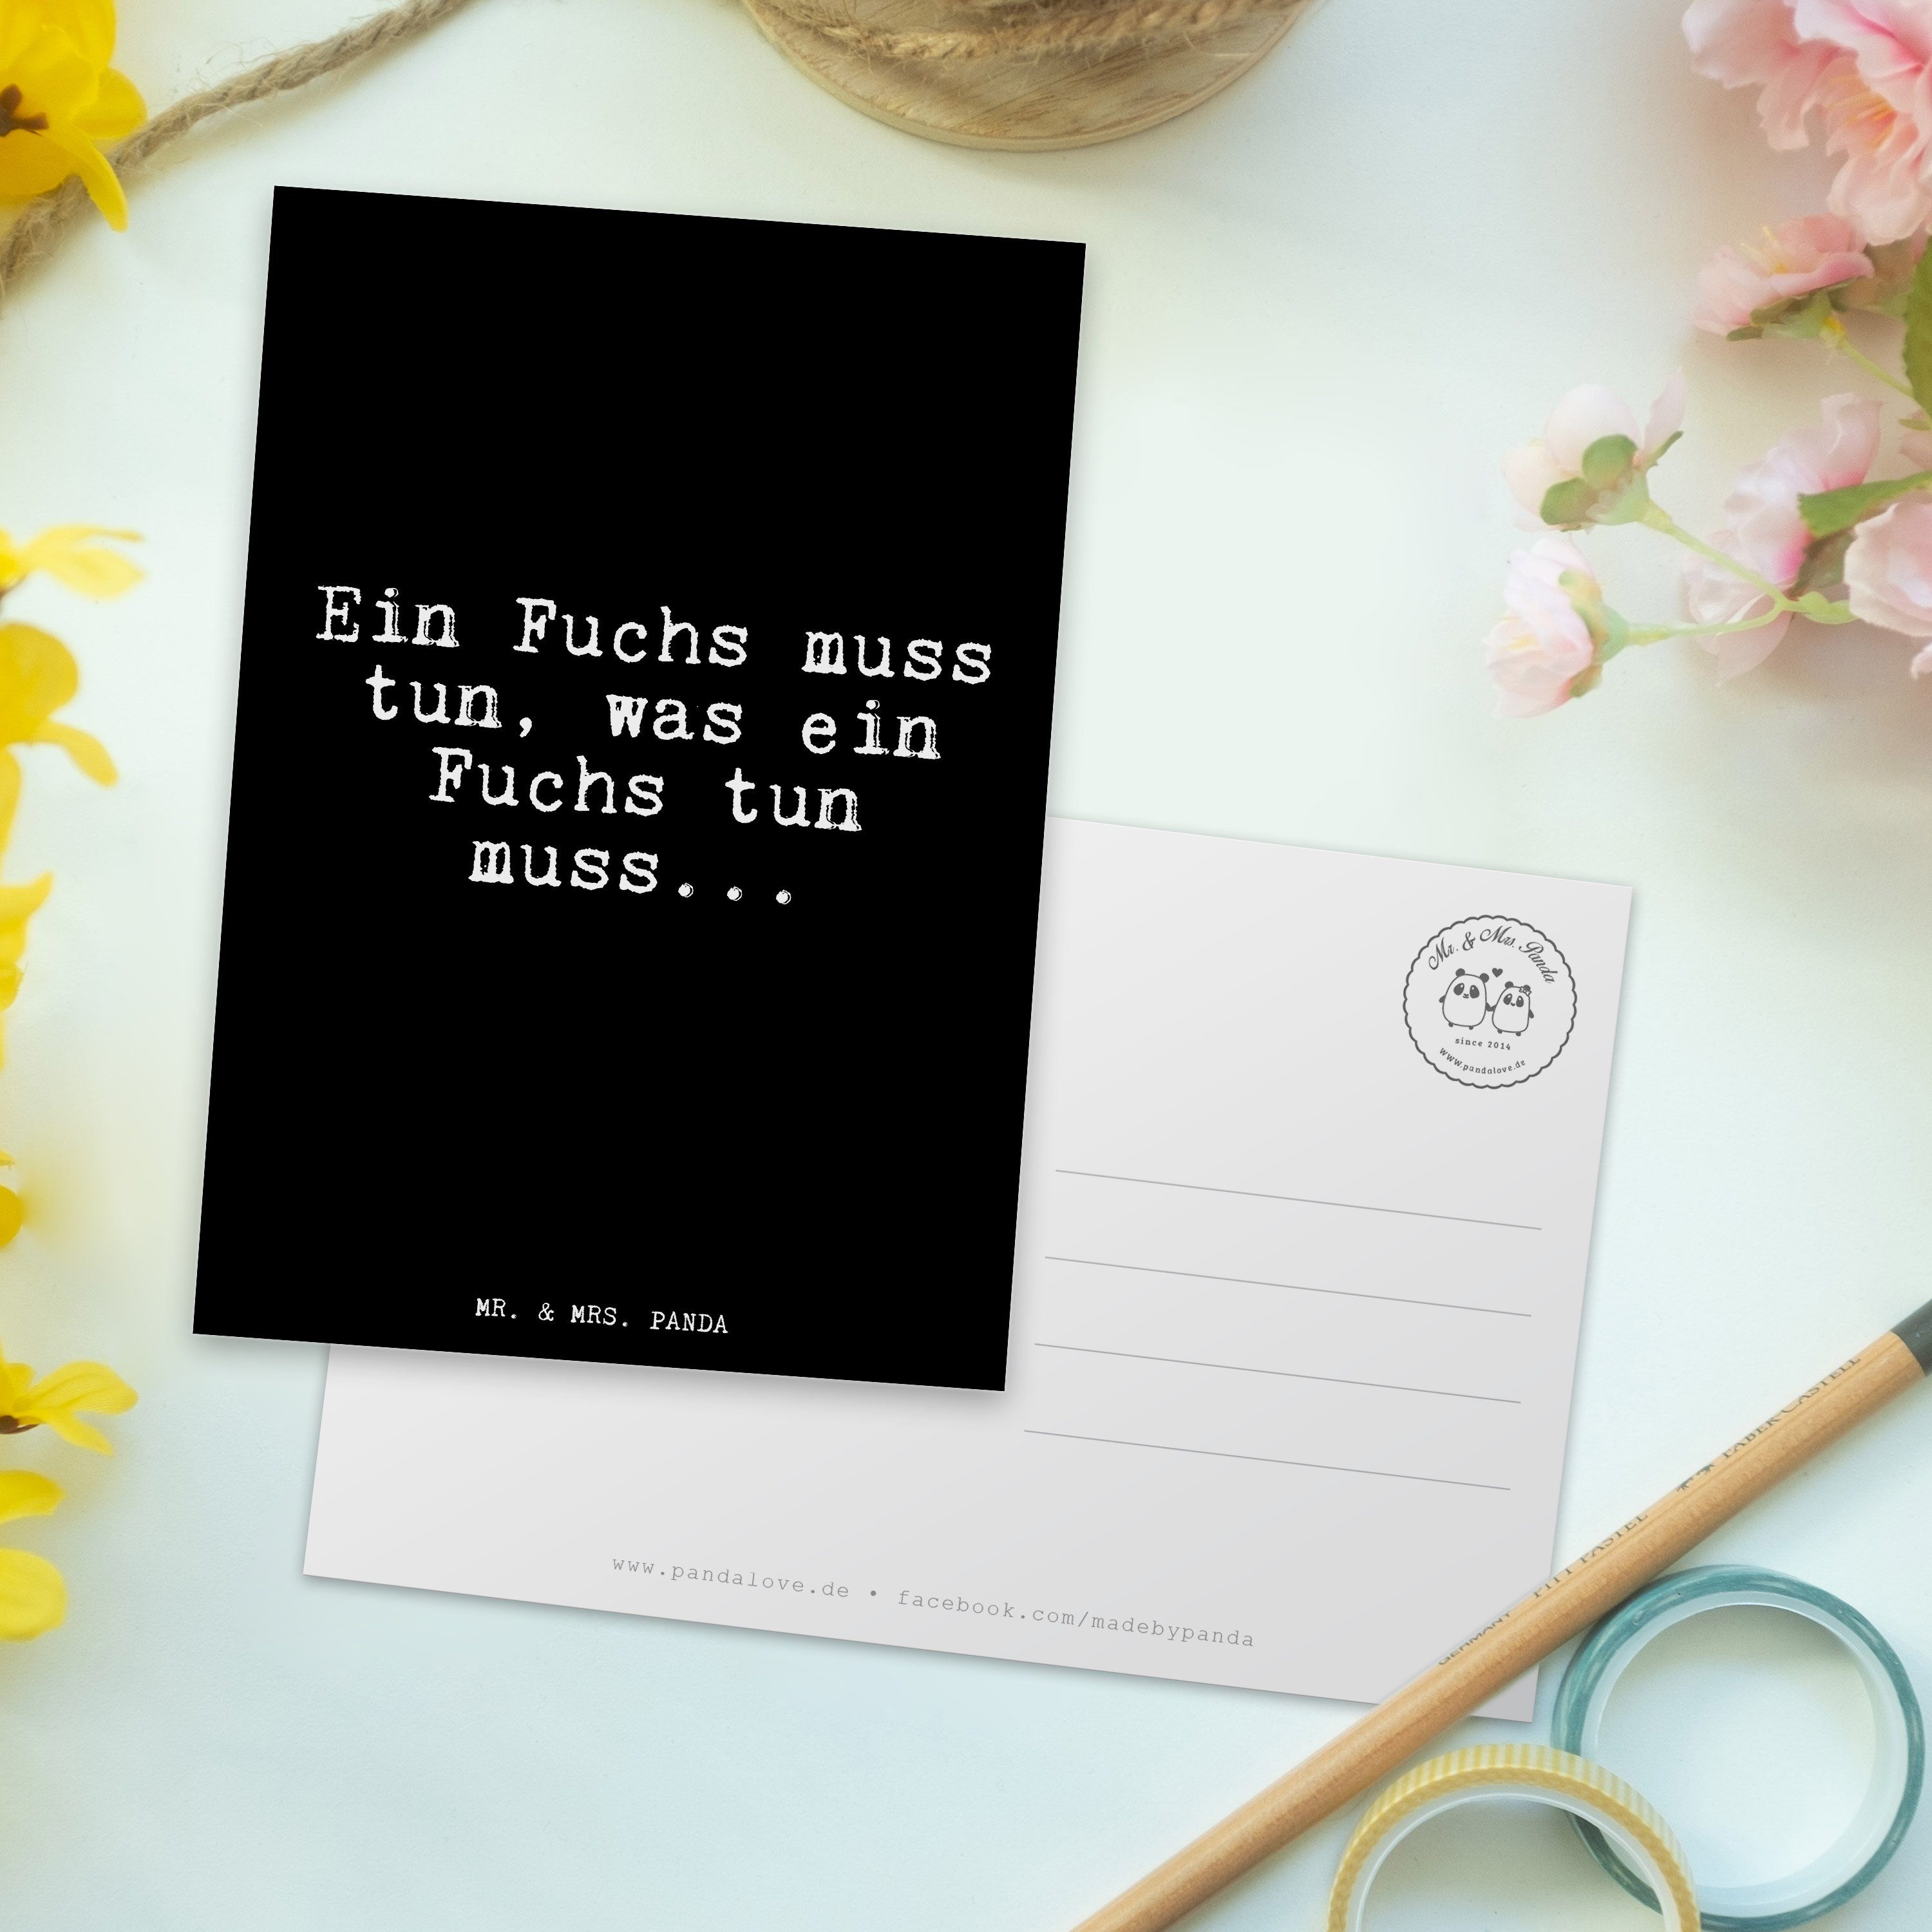 Schwarz Spruch, Geschenk, An Postkarte Panda Schlauberger, Ein & tun,... - Fuchs Mr. Mrs. - muss